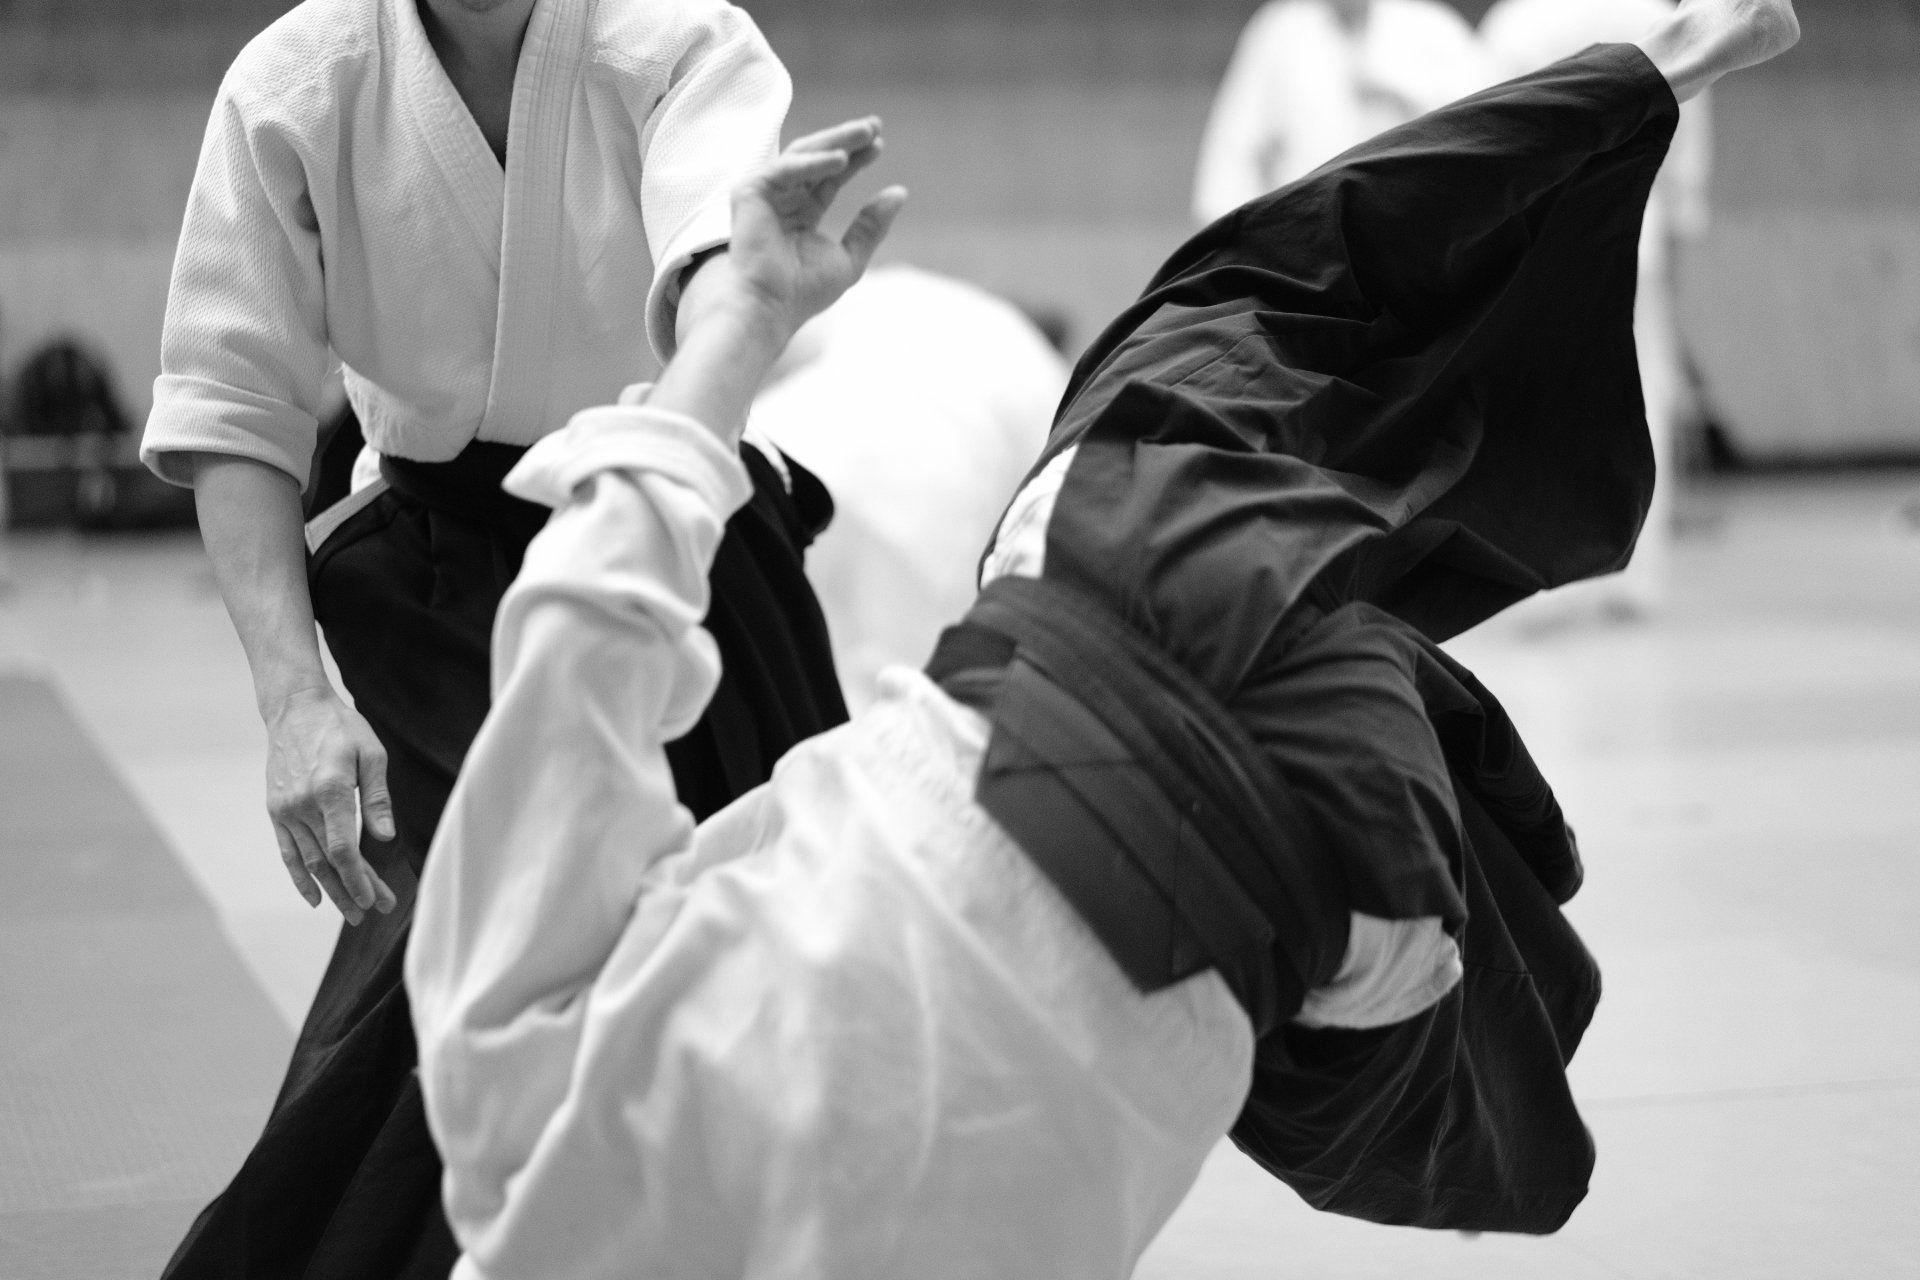 Bạn đã biết về những cảnh giới trong môn võ Aikido chưa?